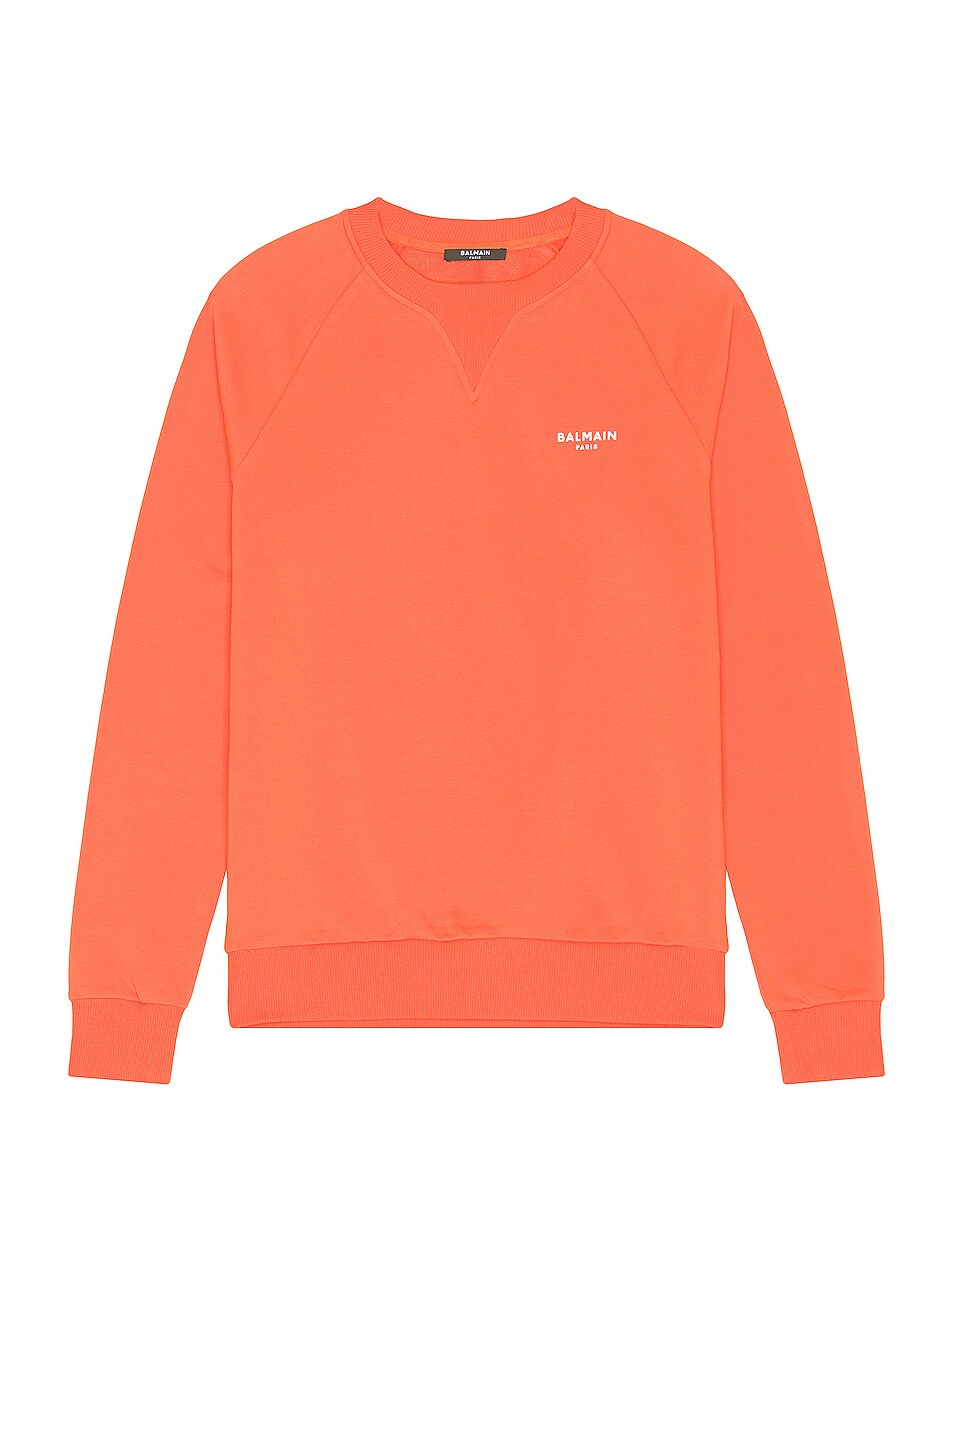 Image 1 of BALMAIN Flock Sweatshirt in Orange & Blanc